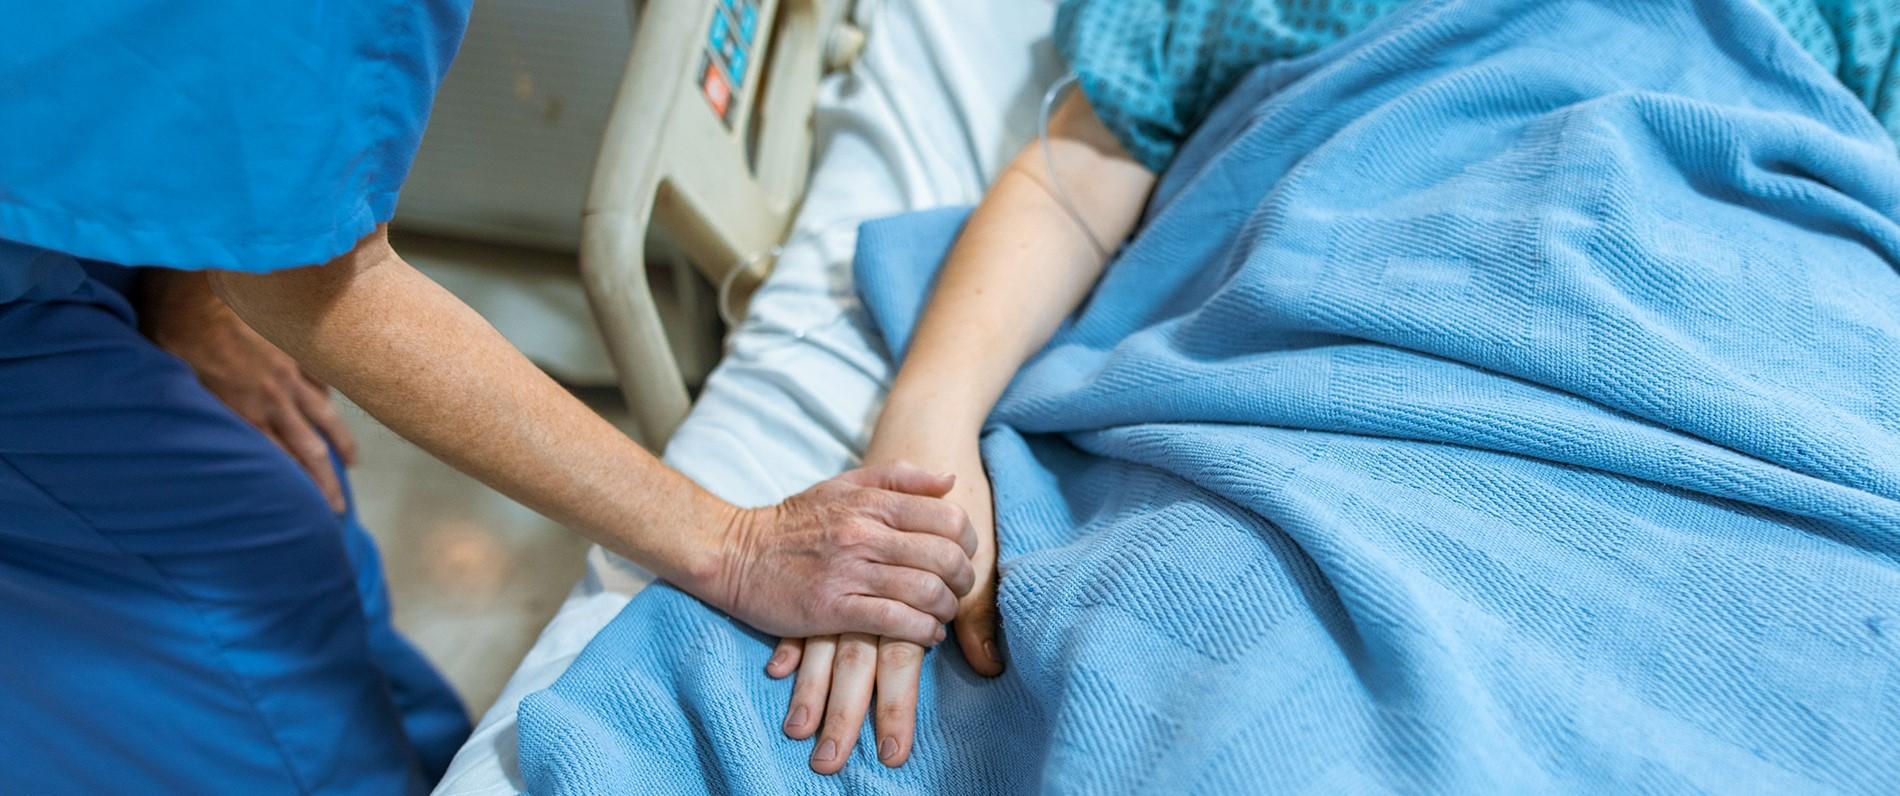 a nurse holding a patient's hand